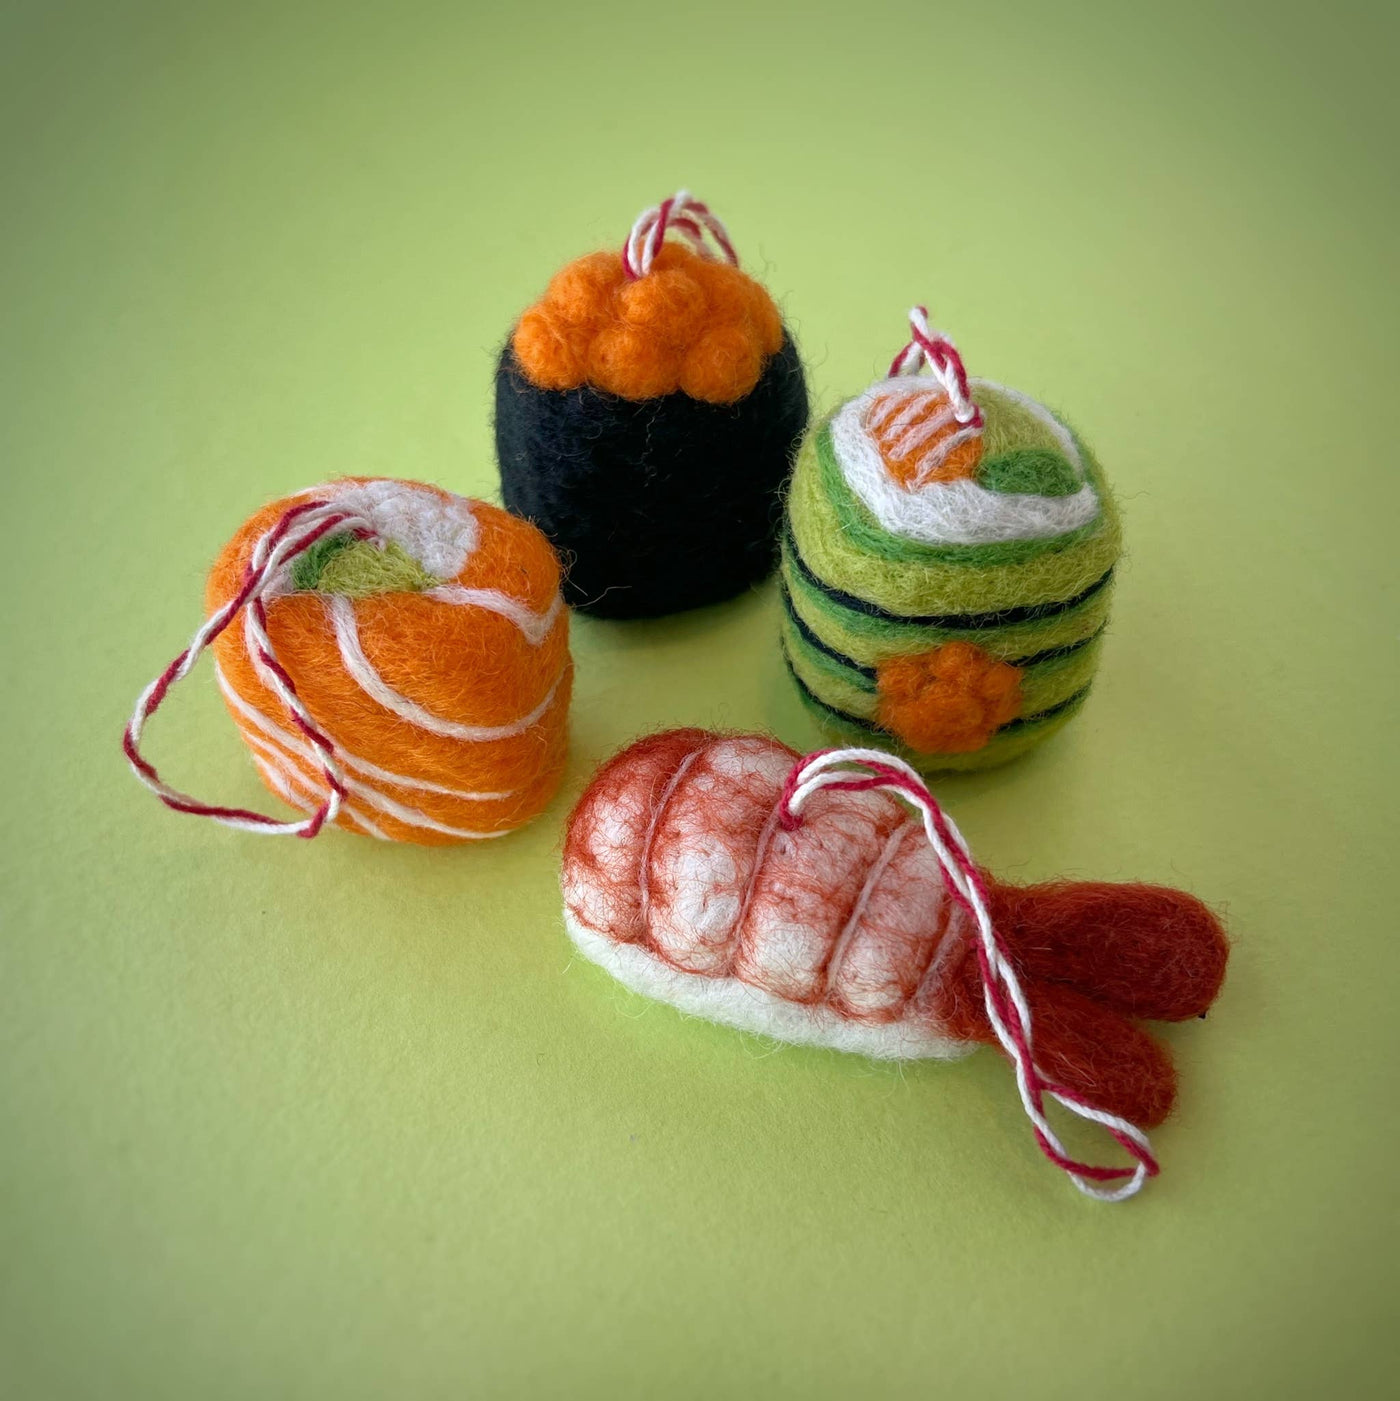 Omakase Sushi Wool Ornament Set